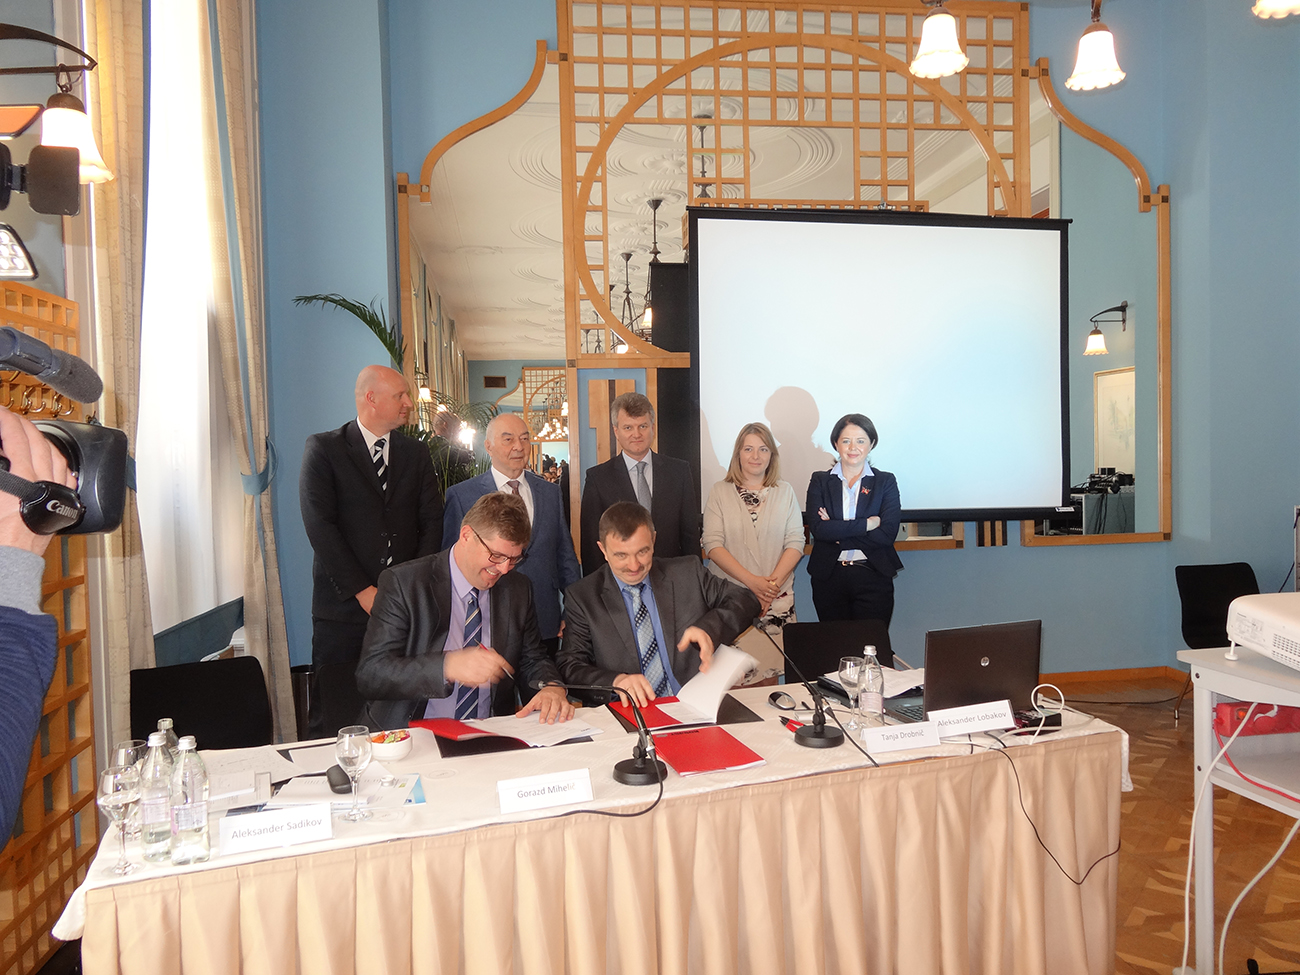 Podpis pogodbe o sodelovanju med ruskim podjetjem Garant-Plus in slovenskim podjetjem Sico, ki bosta zagnala skupen posel s proizvodnjo opreme za predelavo lesa in plastičnih odpadkov.